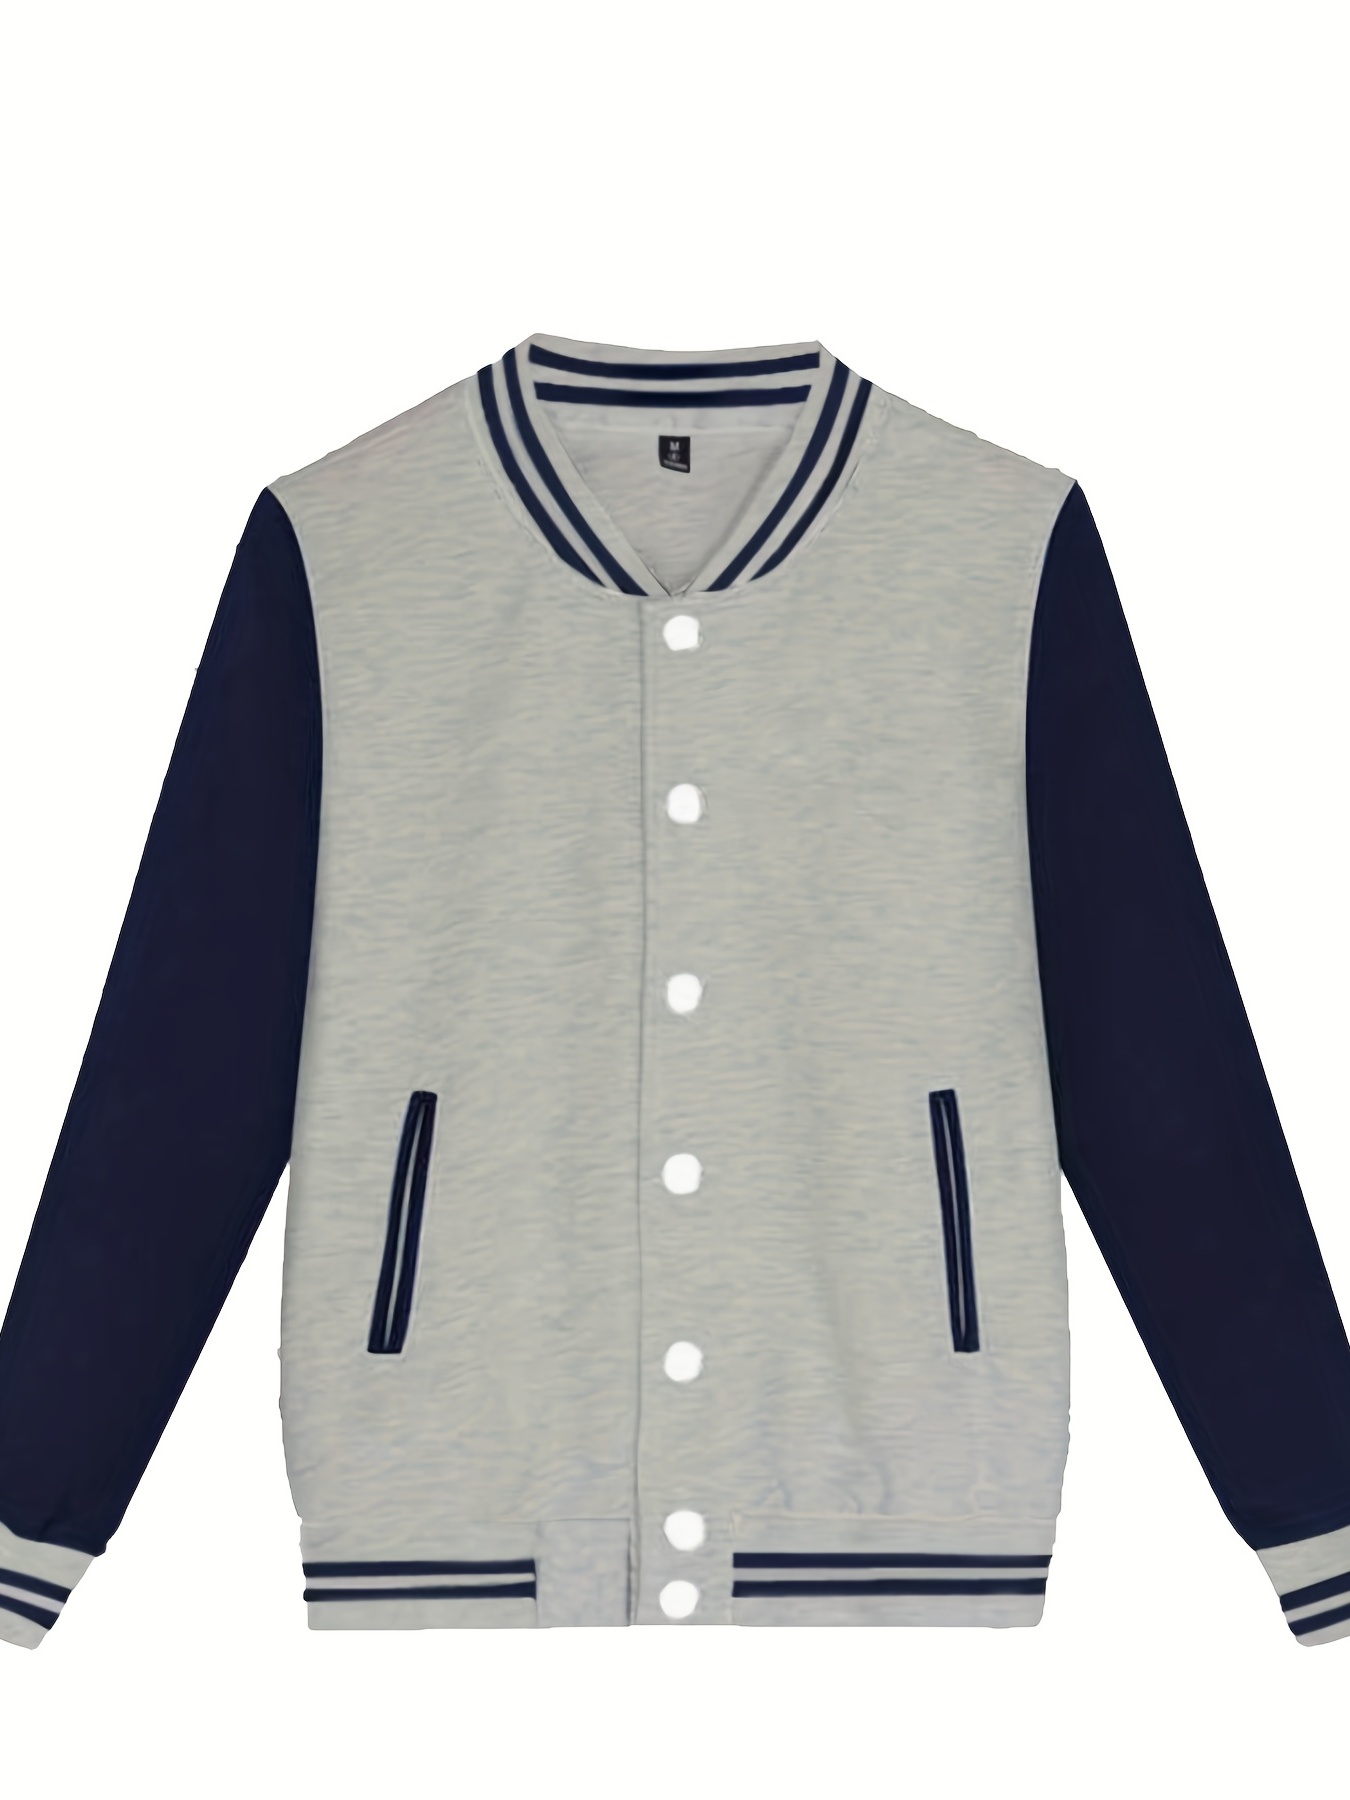 Sky Blue and White Varsity Letterman Jacket-Style Sweatshirt — BORIZ